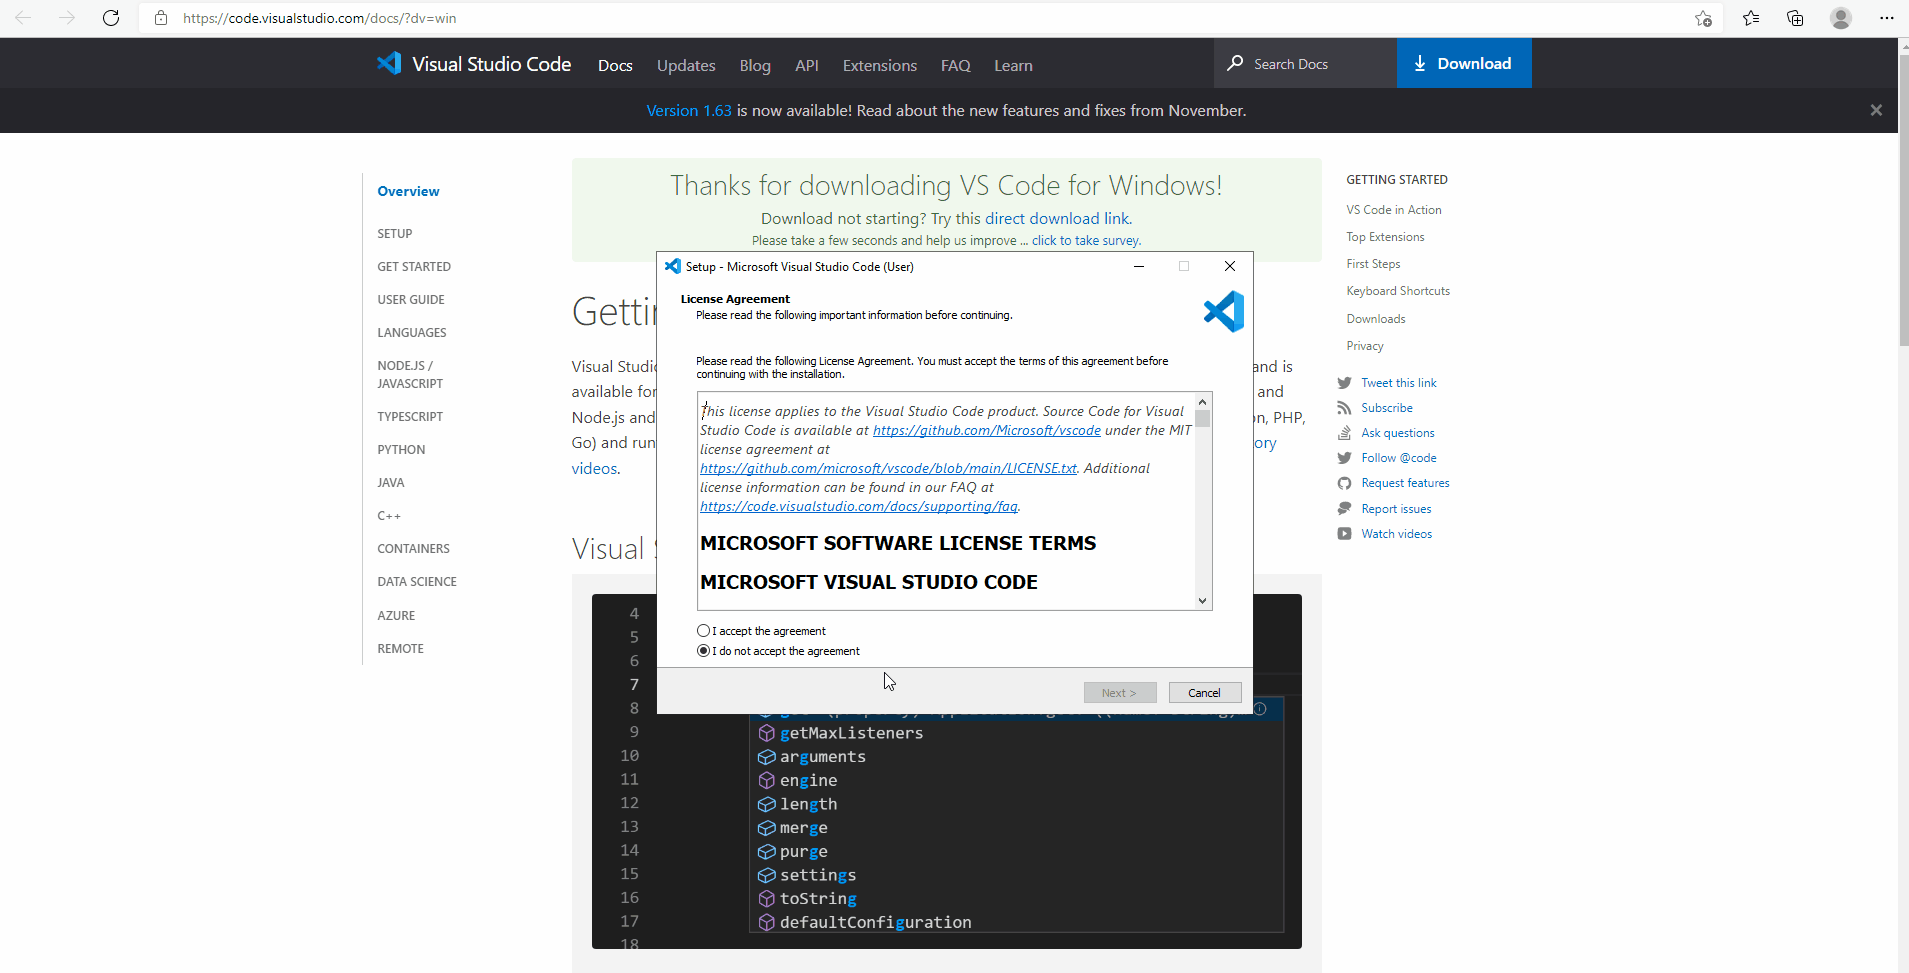 Downloading Visual Studio Code